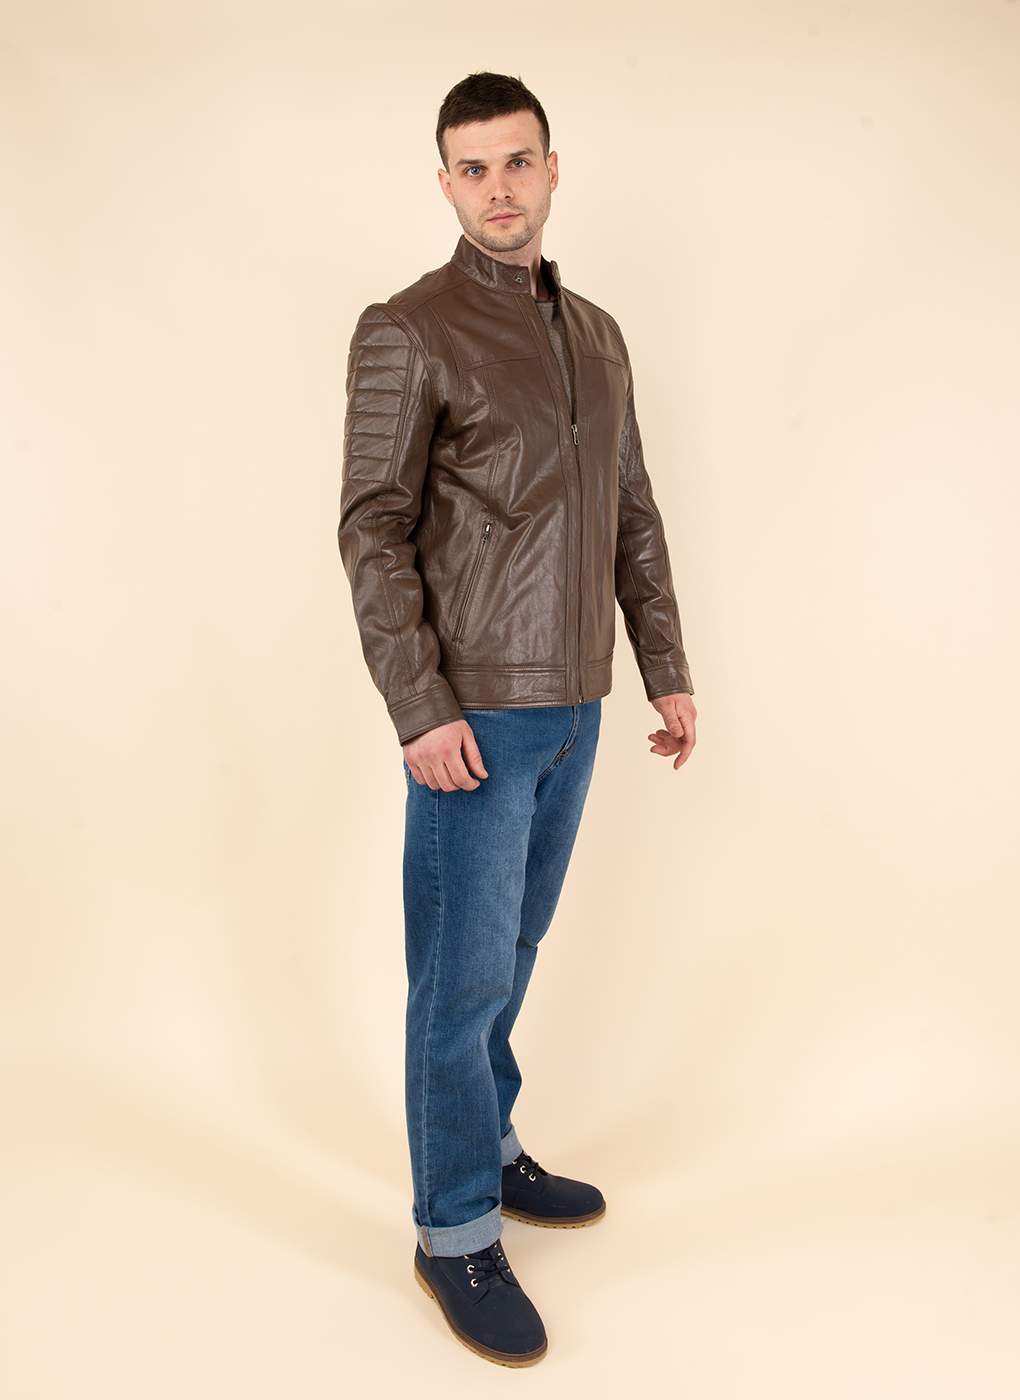 Кожаная куртка мужская Каляев 51748 коричневая 58 RU